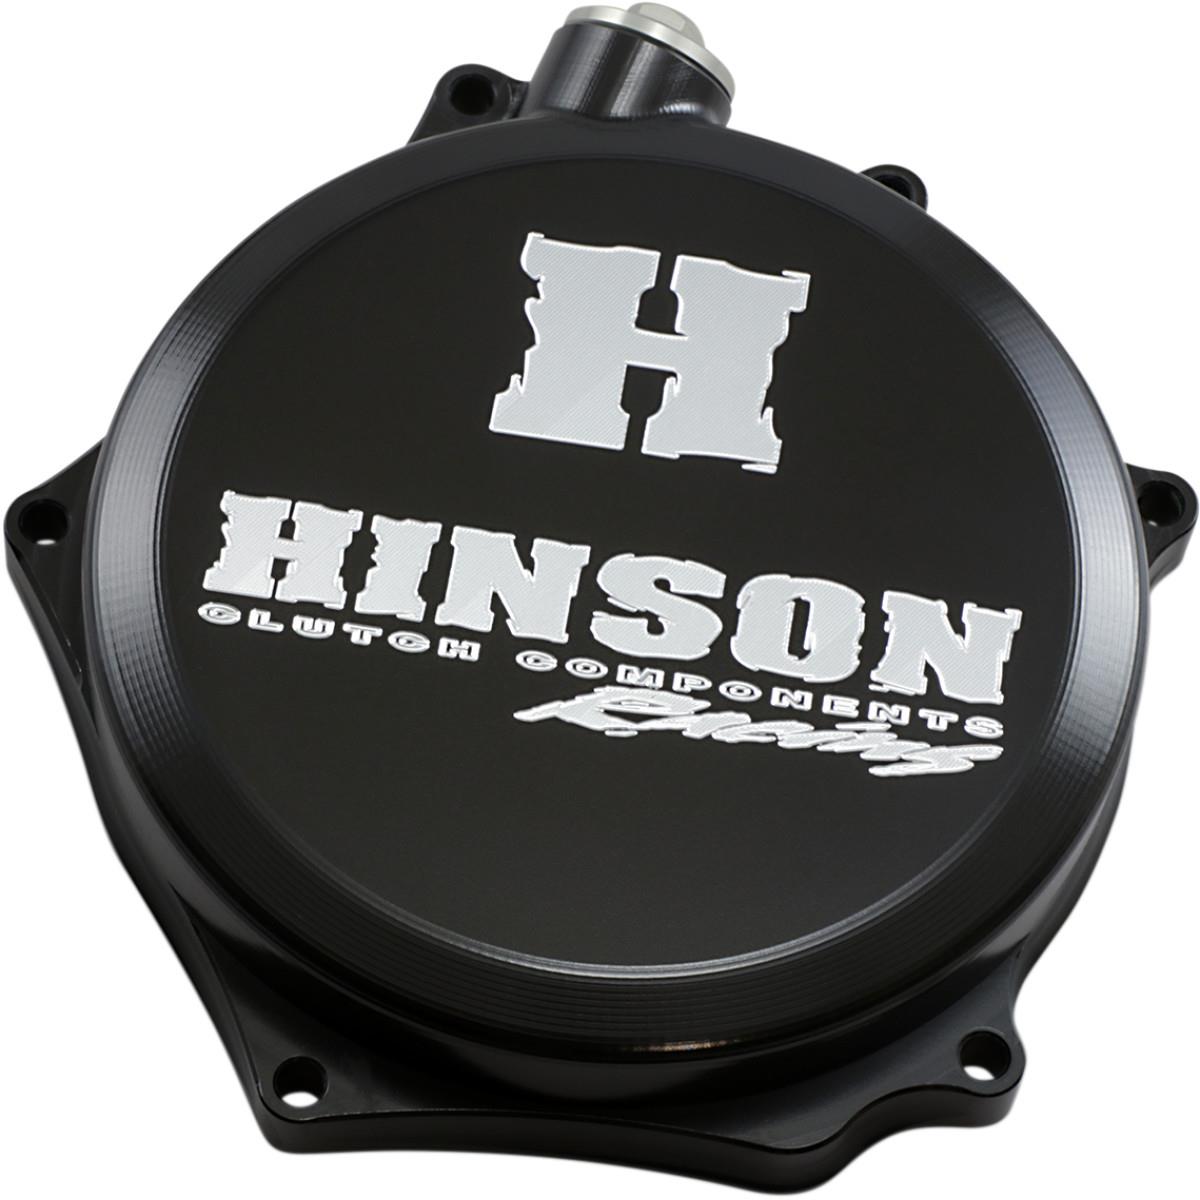 Hinson Clutch Cover Billetproof Suzuki RMZ 250 07-19